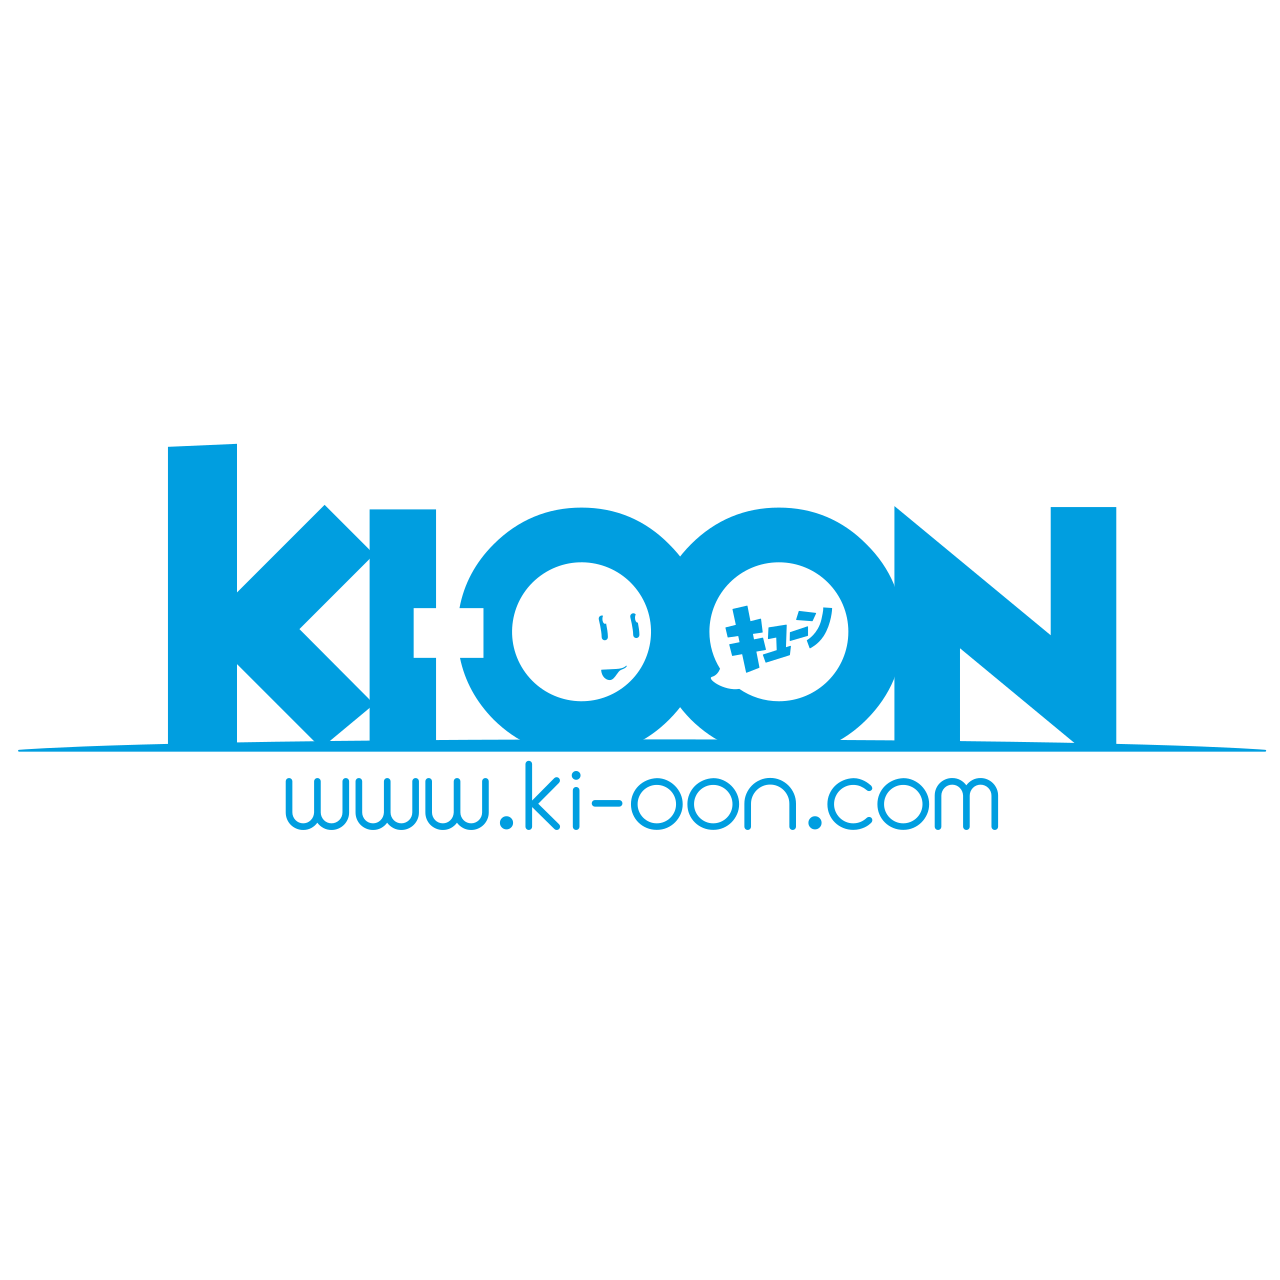 Logo Ki-oon